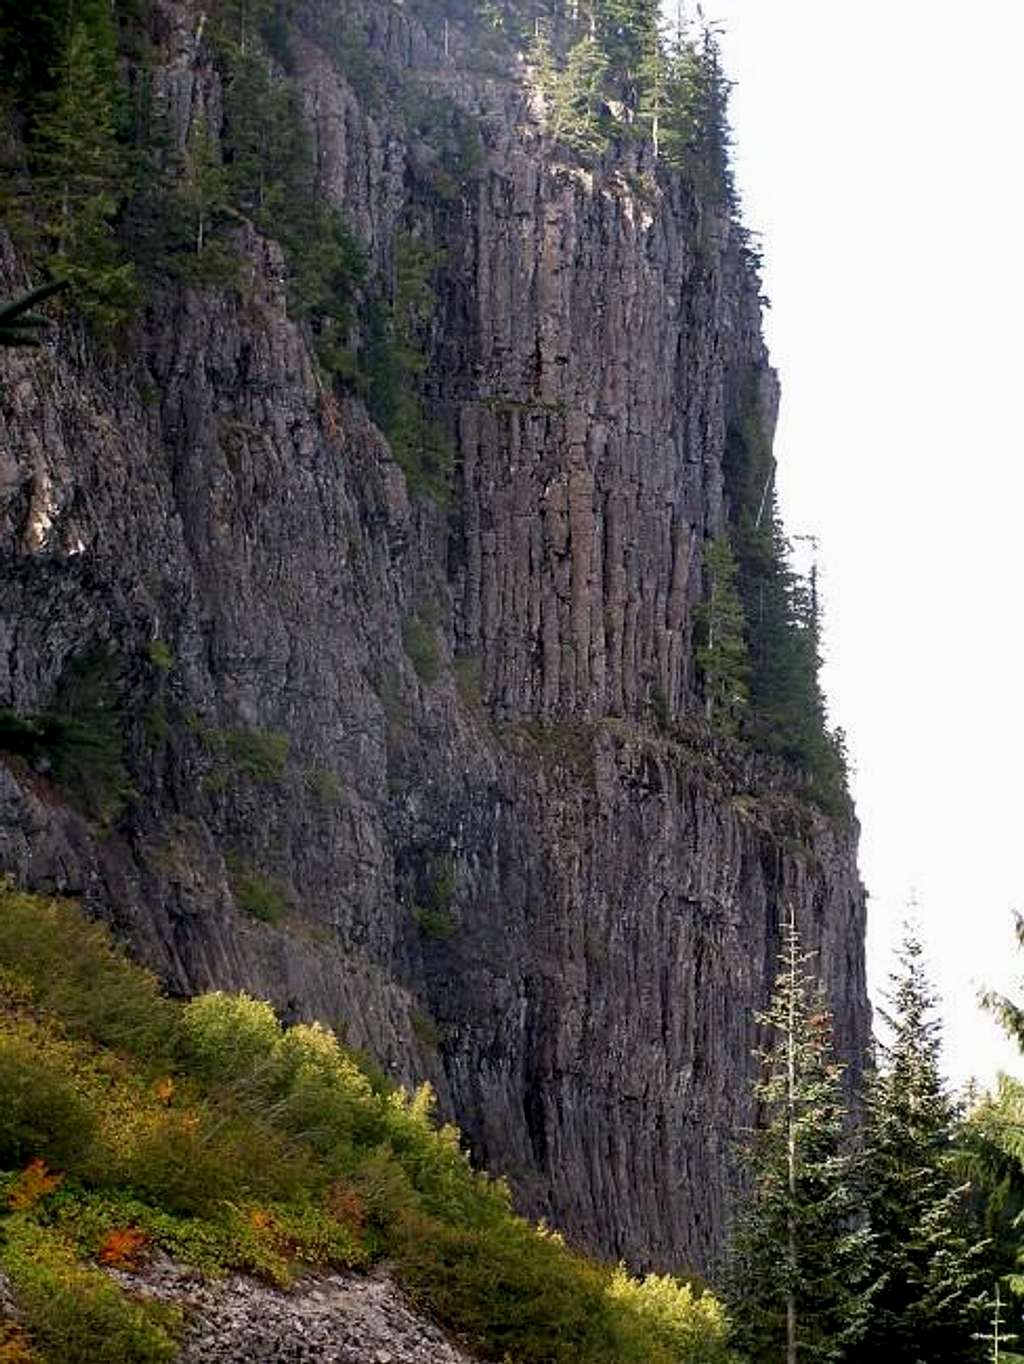 Basalt cliffs along the trail.